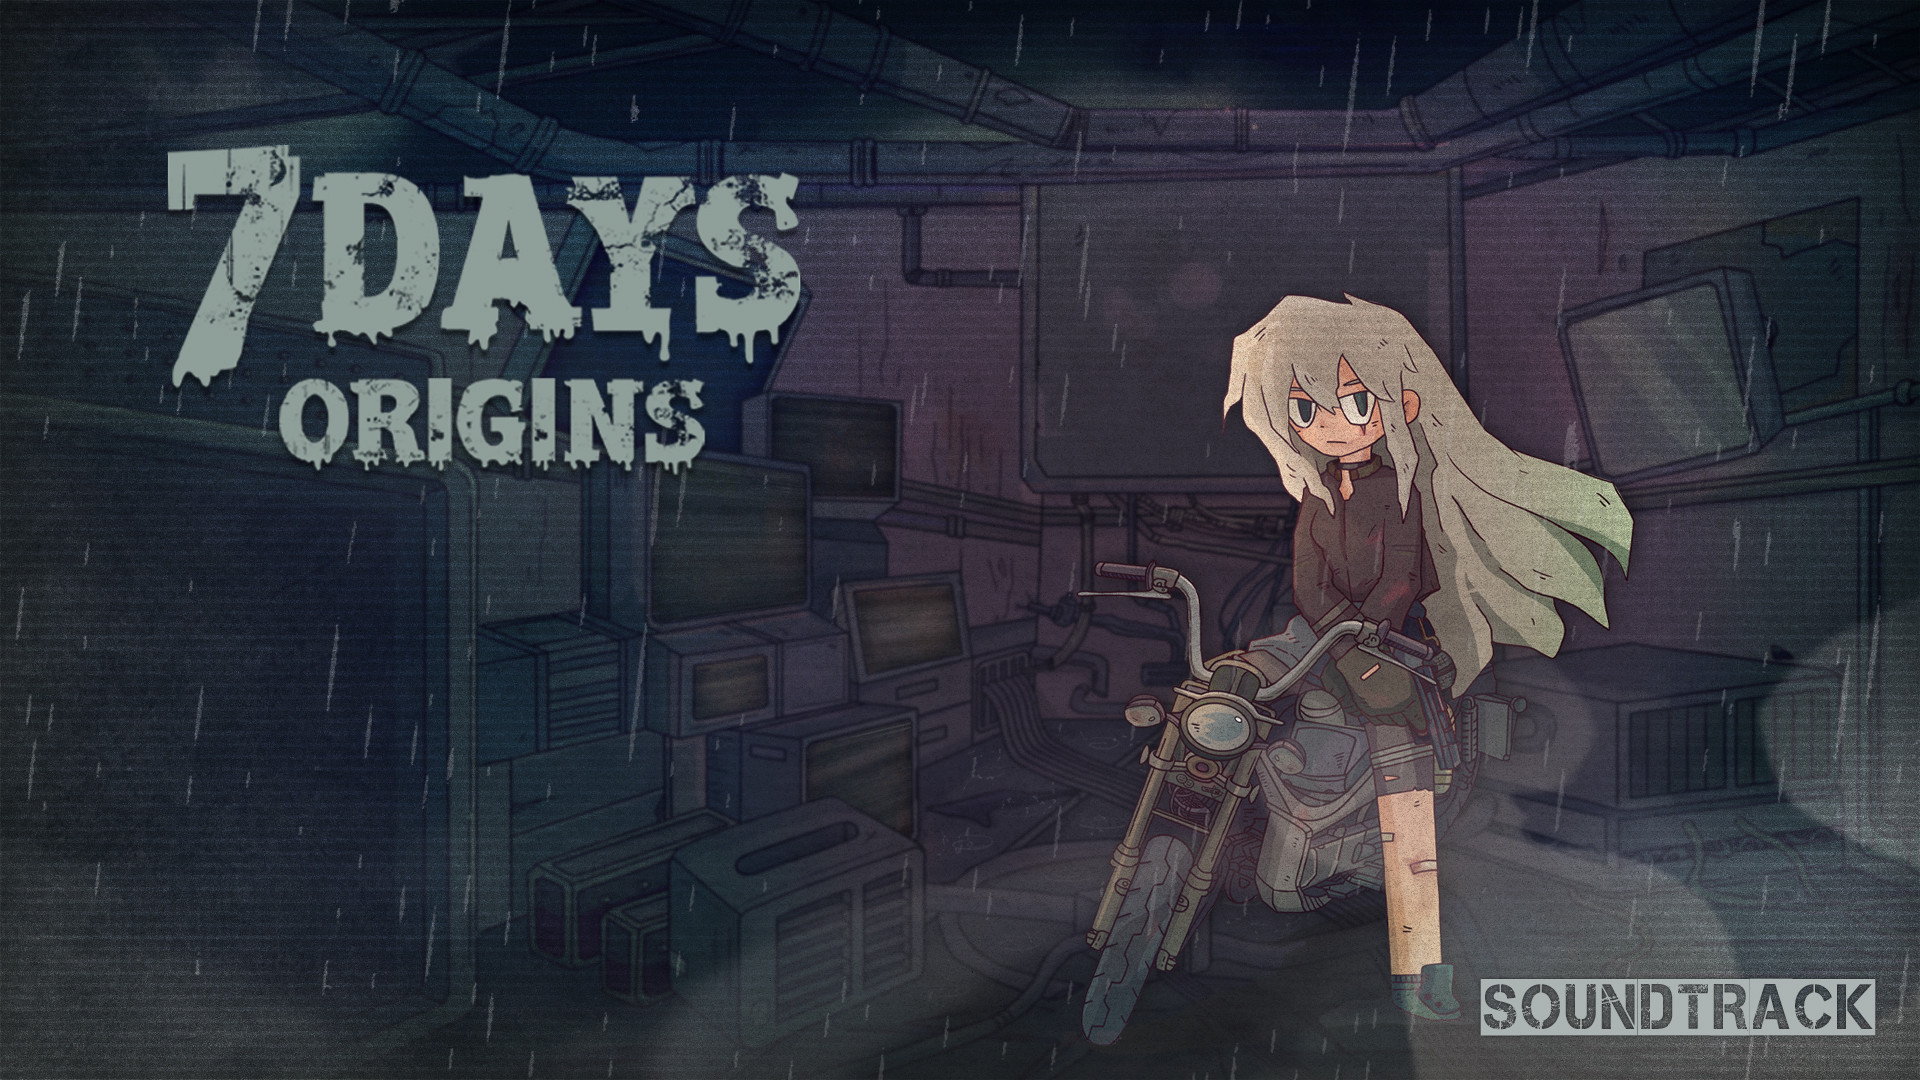 Original game is. Origin игры. Арты 7 Days Origins. 7 Дней ориджин. 7 Days арты buff Studio.